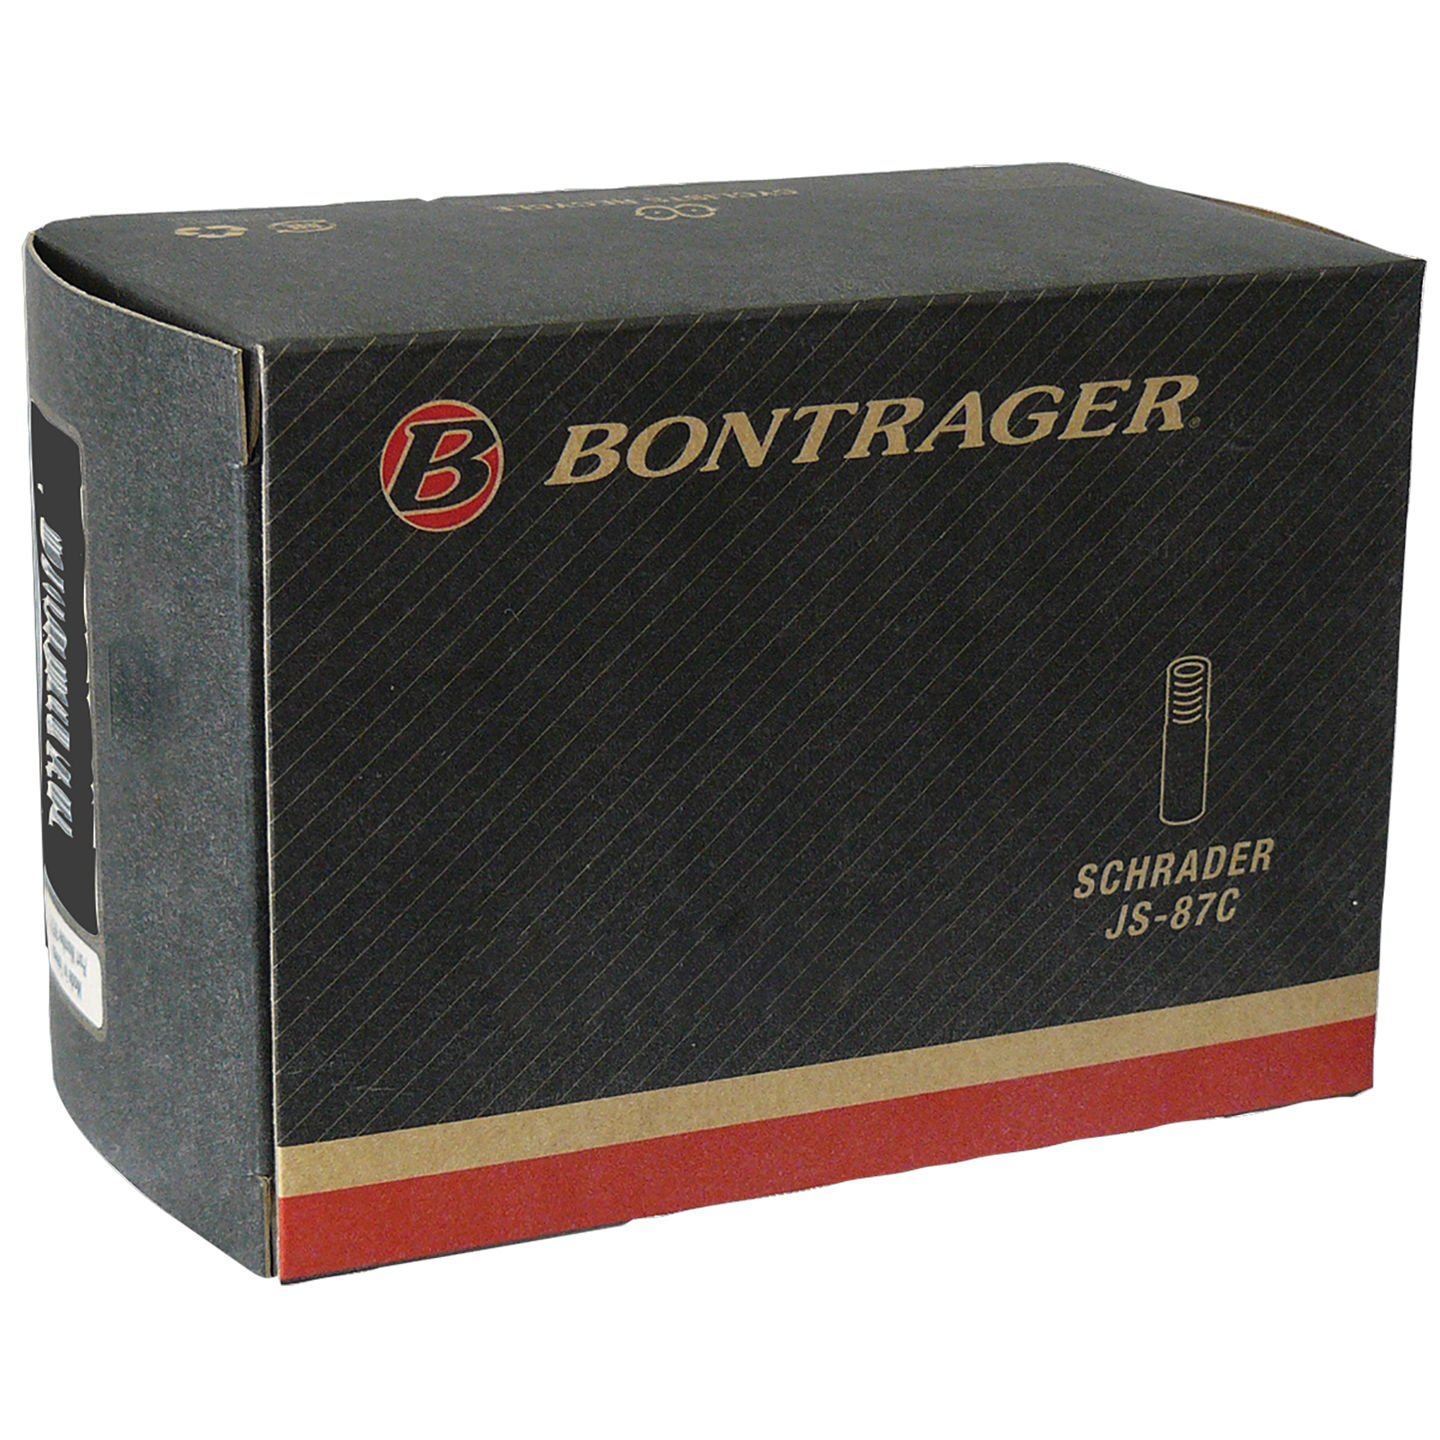 Камера велосипедная Bontrager Standard, 26x1.25-1.75, Presta 36mm, TCG-88449 камера для велосипеда bontrager self sealing 26x1 75 2 125 sv самоклеющаяся с защитой от проколов tcg 417037